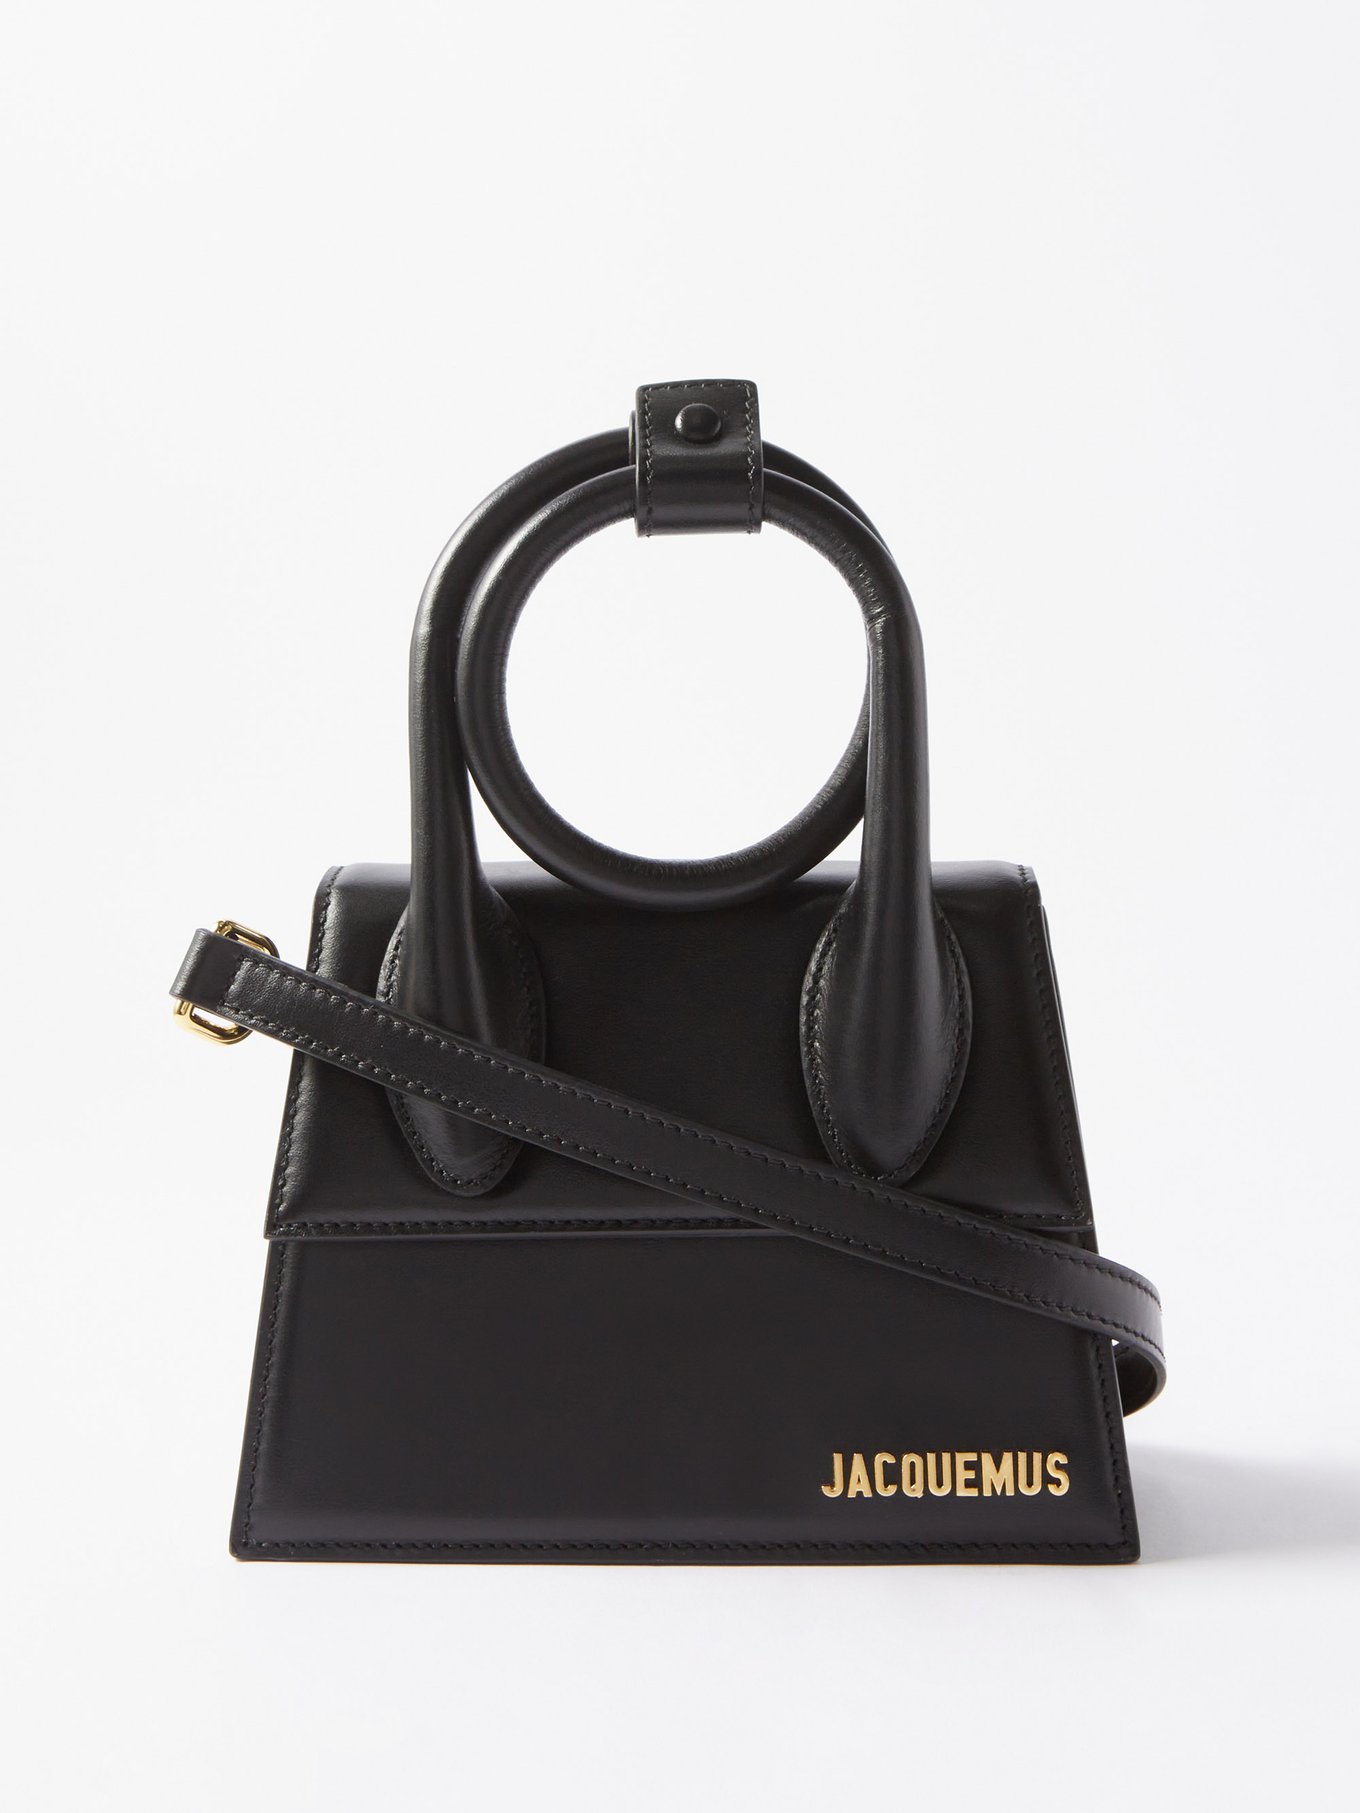 Black Chiquito Noeud mini leather bag, Jacquemus